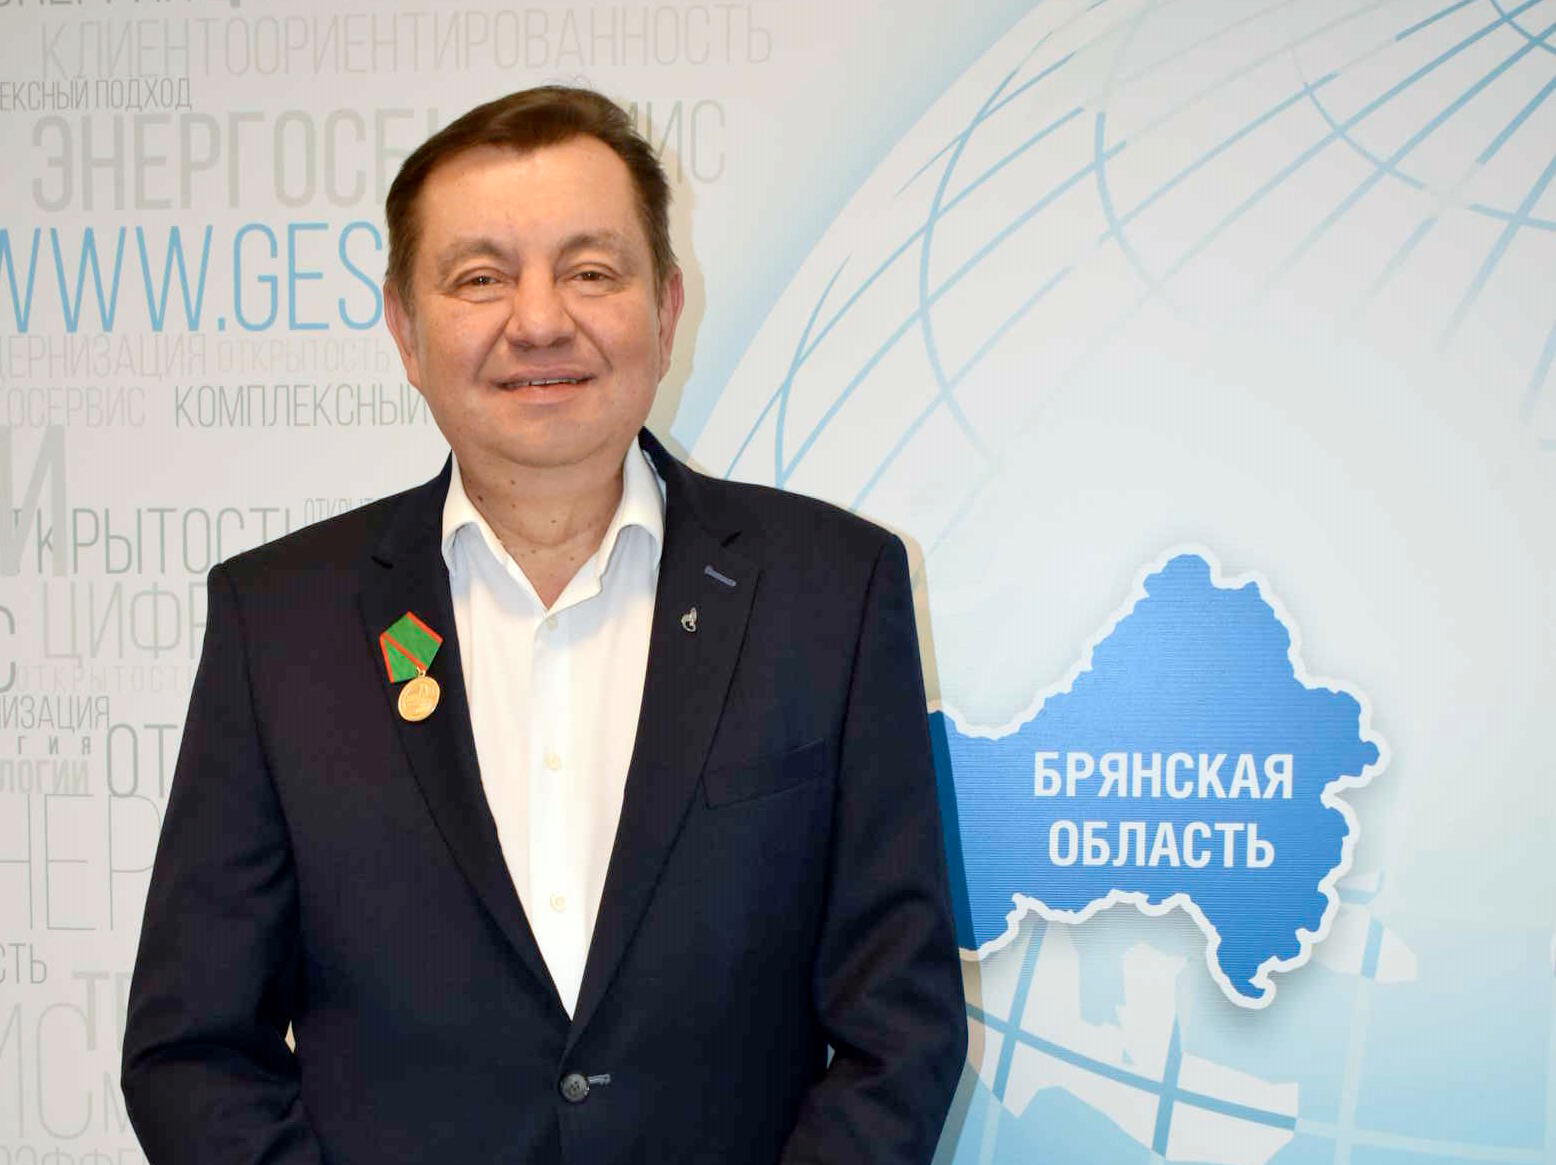 Директор филиала «Брянскэнергосбыт» Олег Носов  награжден медалью